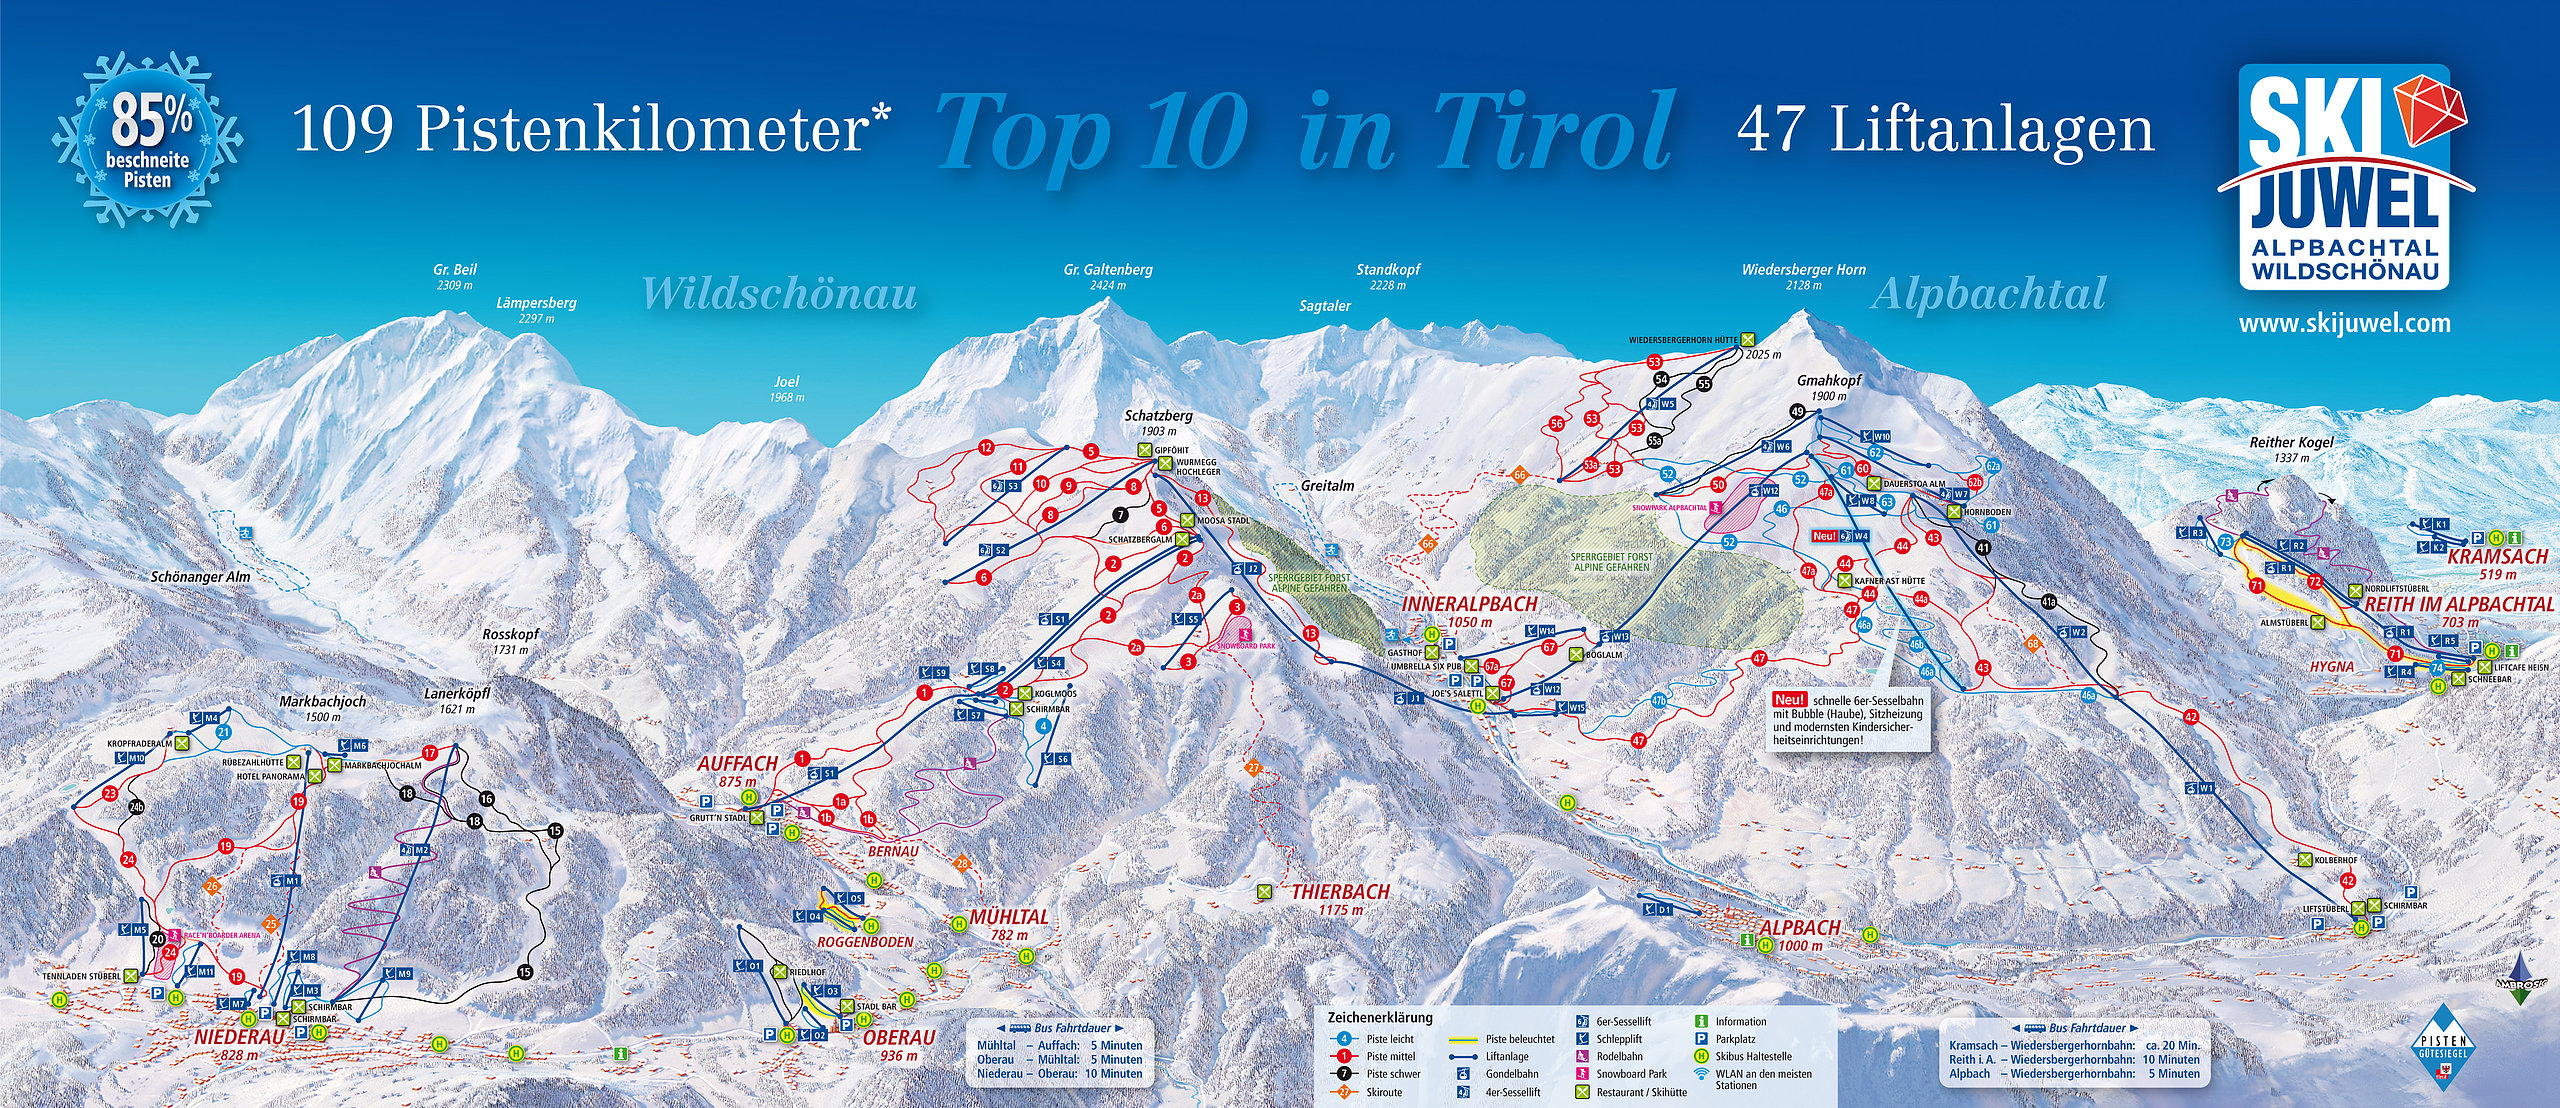 Alpbachtal-Ski-Juwel-Alpbachtal-Wildschonau Piste Map